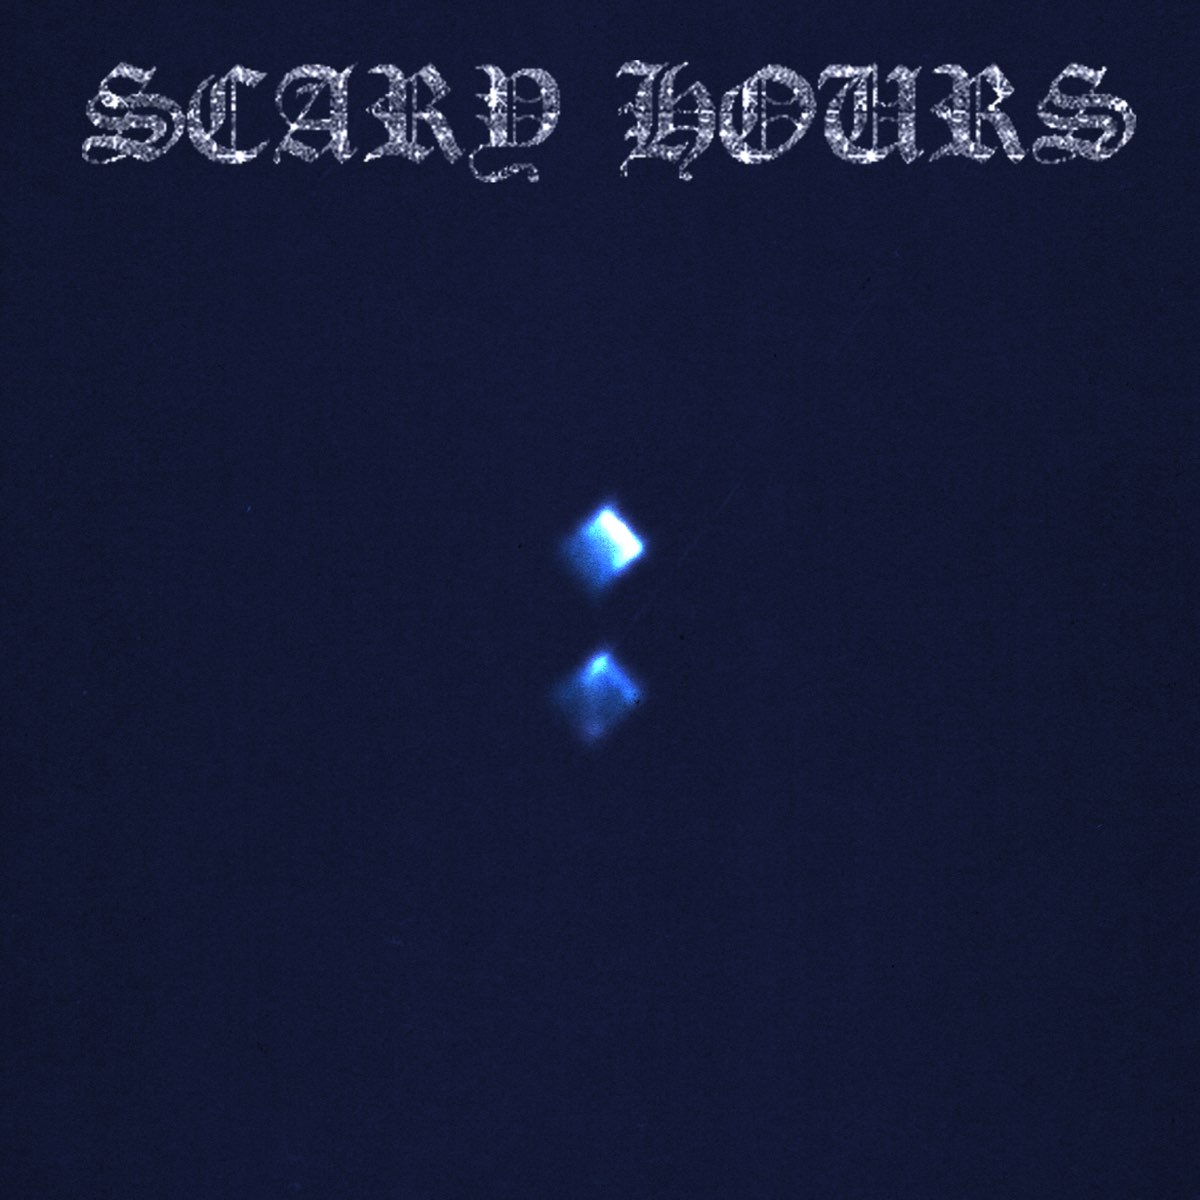 Capa do EP Scary Hours 2, do rapper Drake. A capa é toda azul escura. No topo, está escrito Scary Hours, num fonte super estilizada e com acabamento brilhante, semelhante a um diamante. No meio da capa, está dois quadrados azuis claro. 